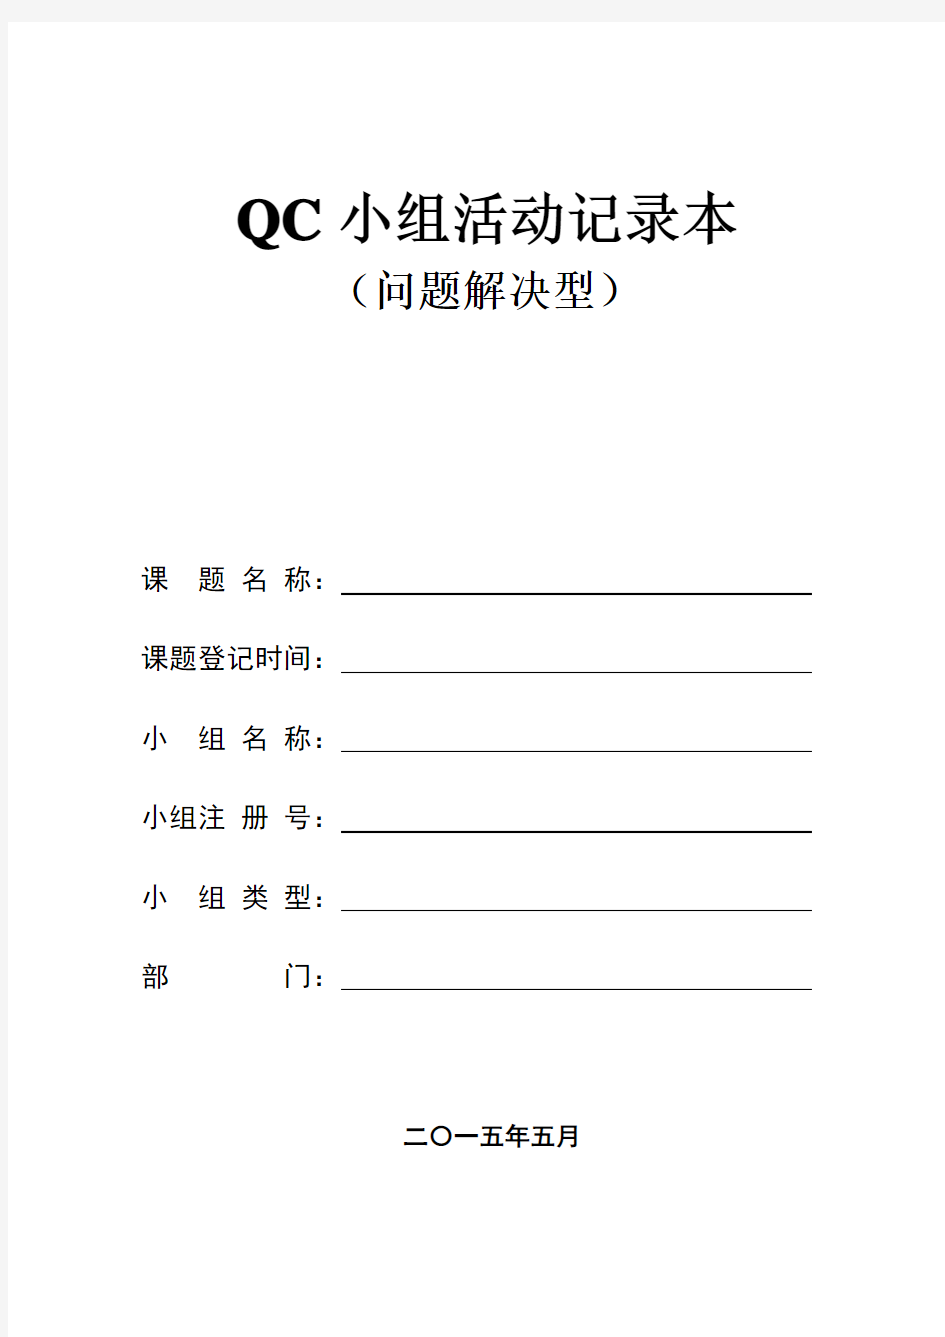 QC小组活动记录本完整版